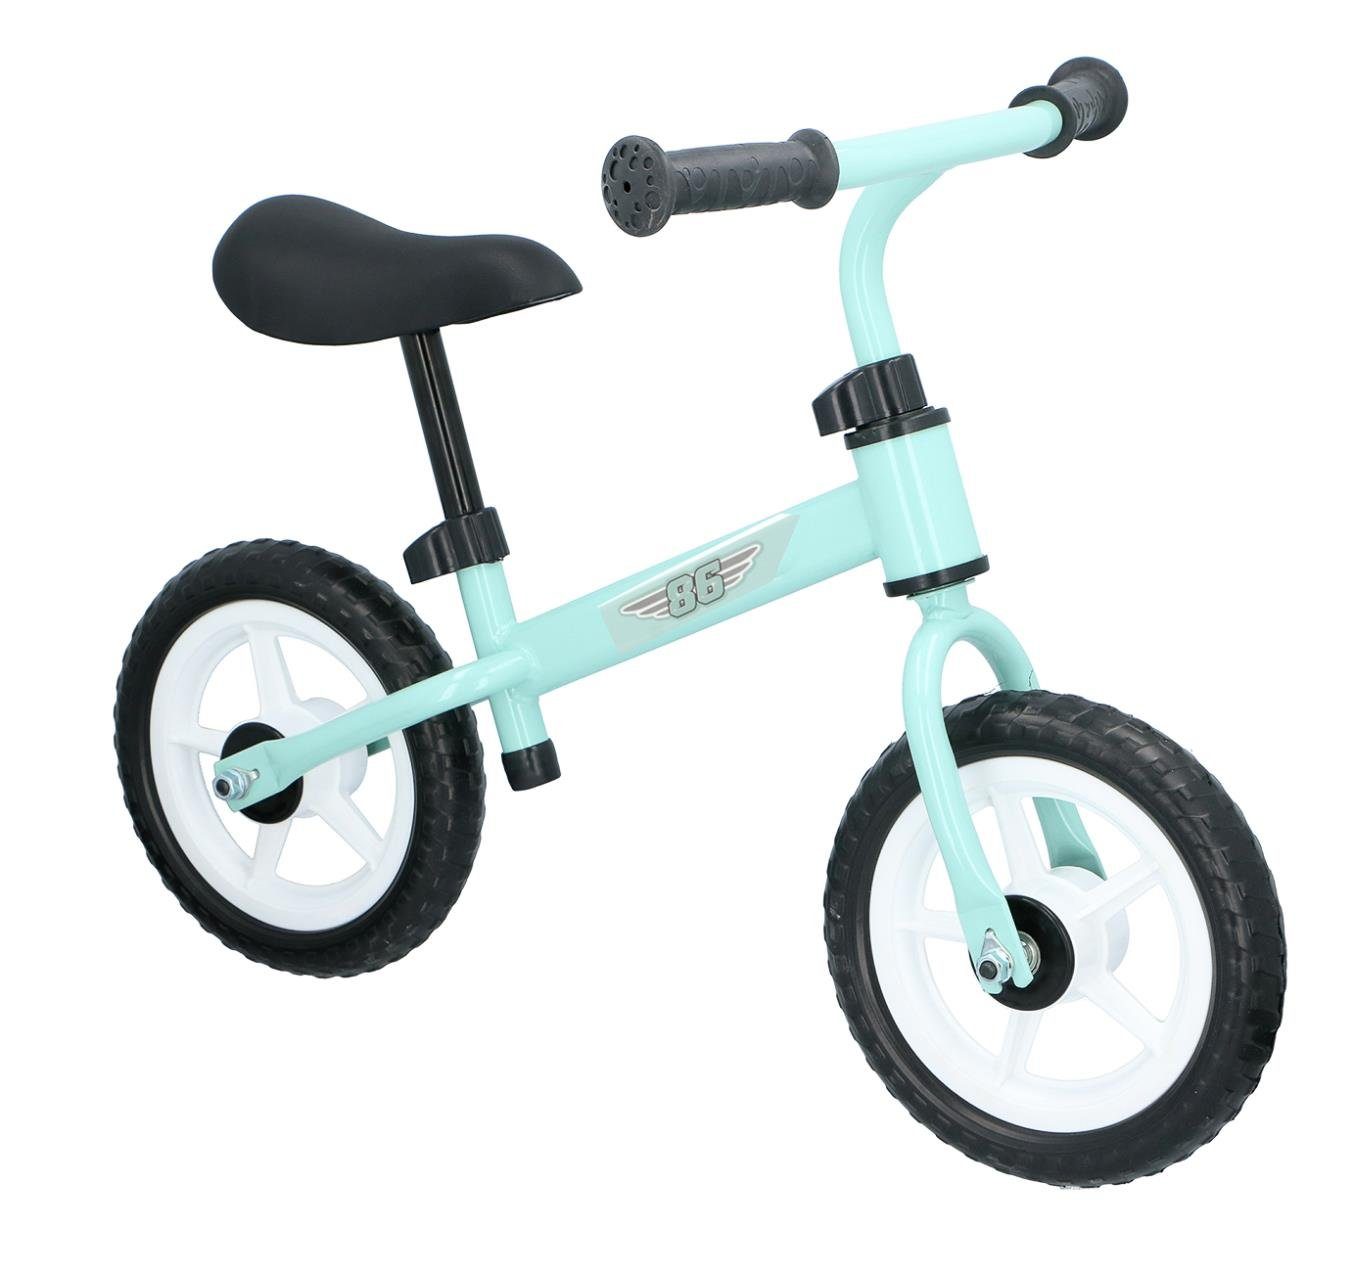 Profi Laufrad Dreirad Lernlaufrad Lauflernhilfe Kinderlaufrad Rutschfahrzeug DE 